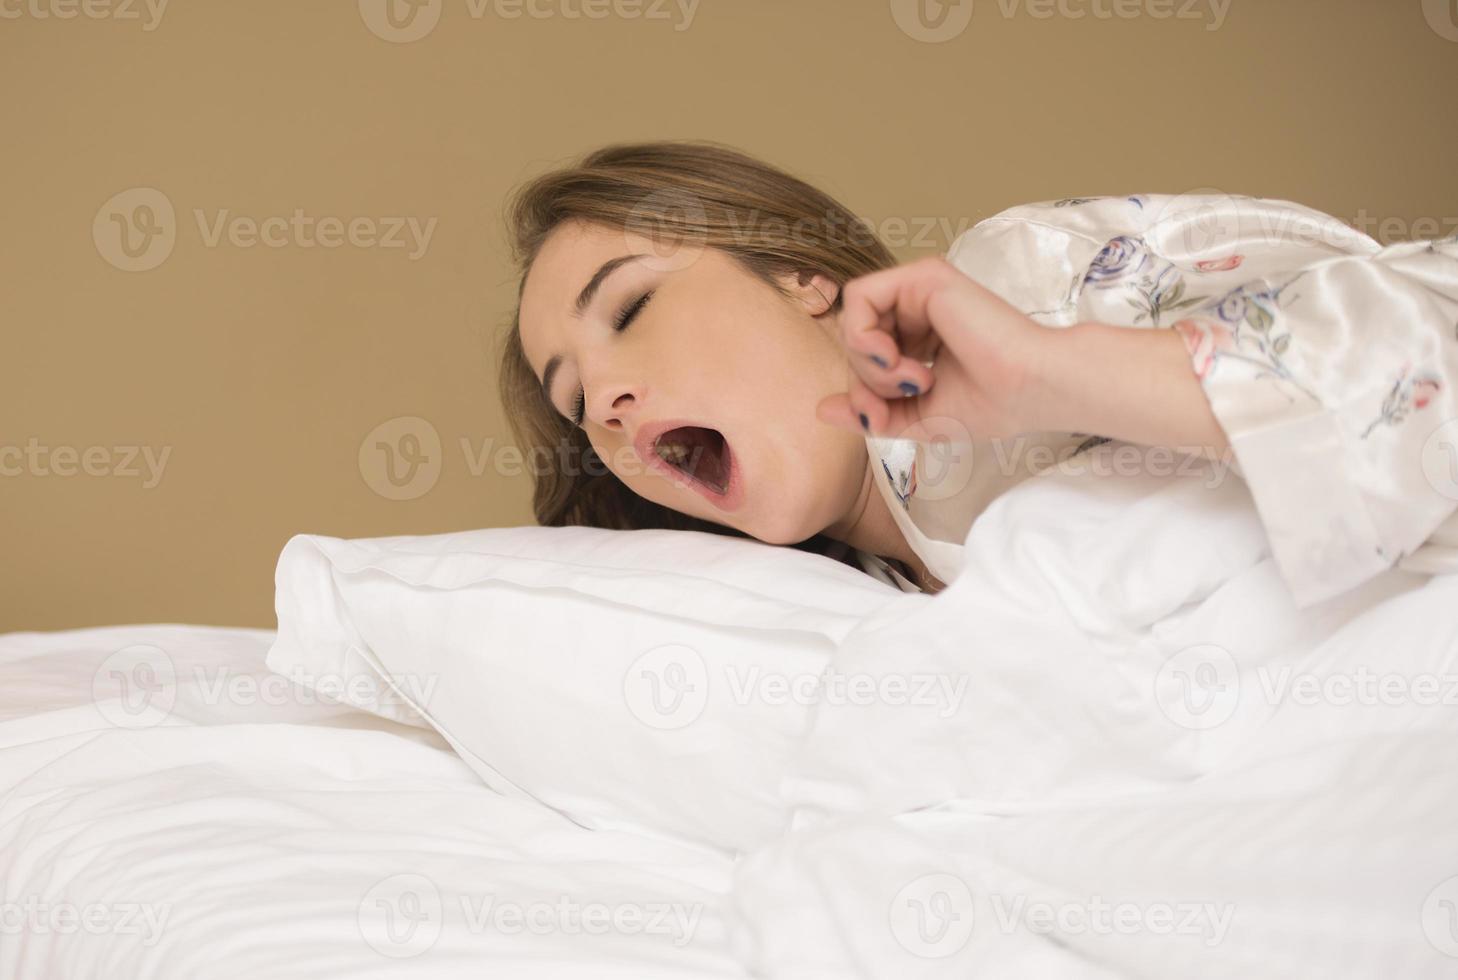 friedliche, ruhige, schöne junge dame trägt pyjamas, die schlafend liegen, entspannendes schlafen in einem gemütlichen weißen bett auf einem weichen kissen, das sich ausruht foto